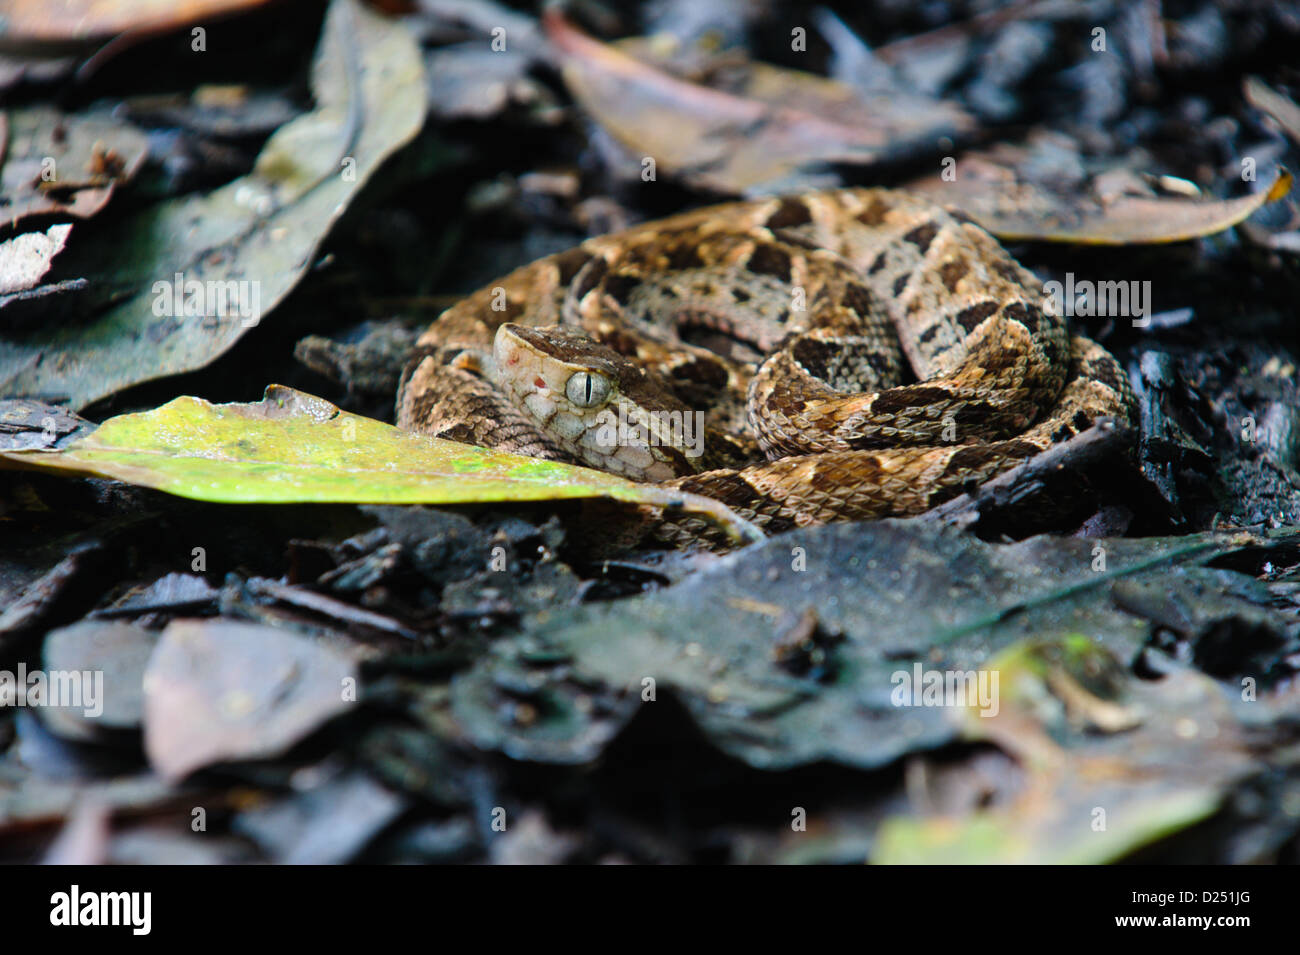 Coiled juvenile fer-de-lance (Bothrops asper), pit viper, snake amongst the leaf litter. Costa Rica Stock Photo